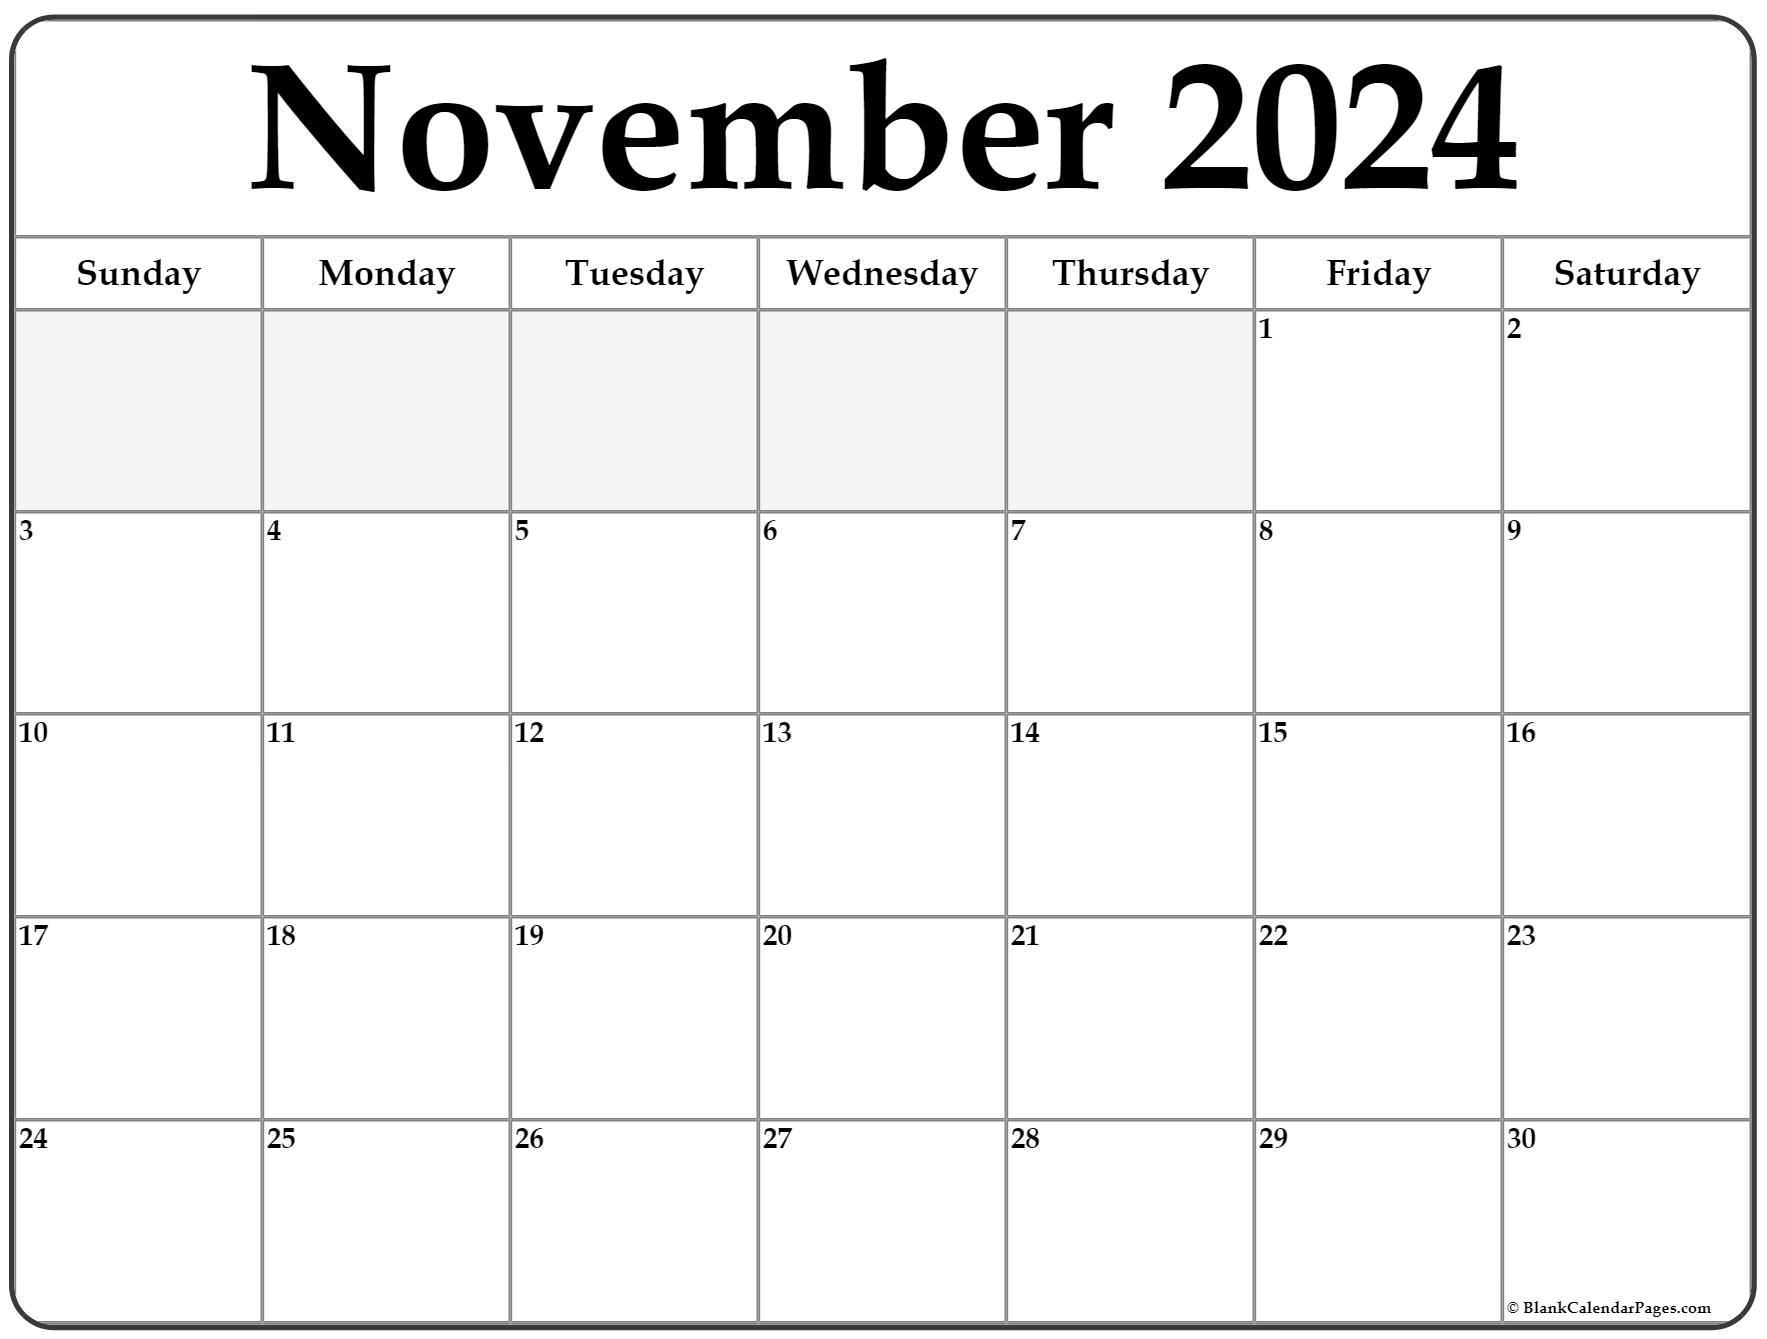 November 2022 Calendar Printable November 2022 Calendar | Free Printable Calendar Templates